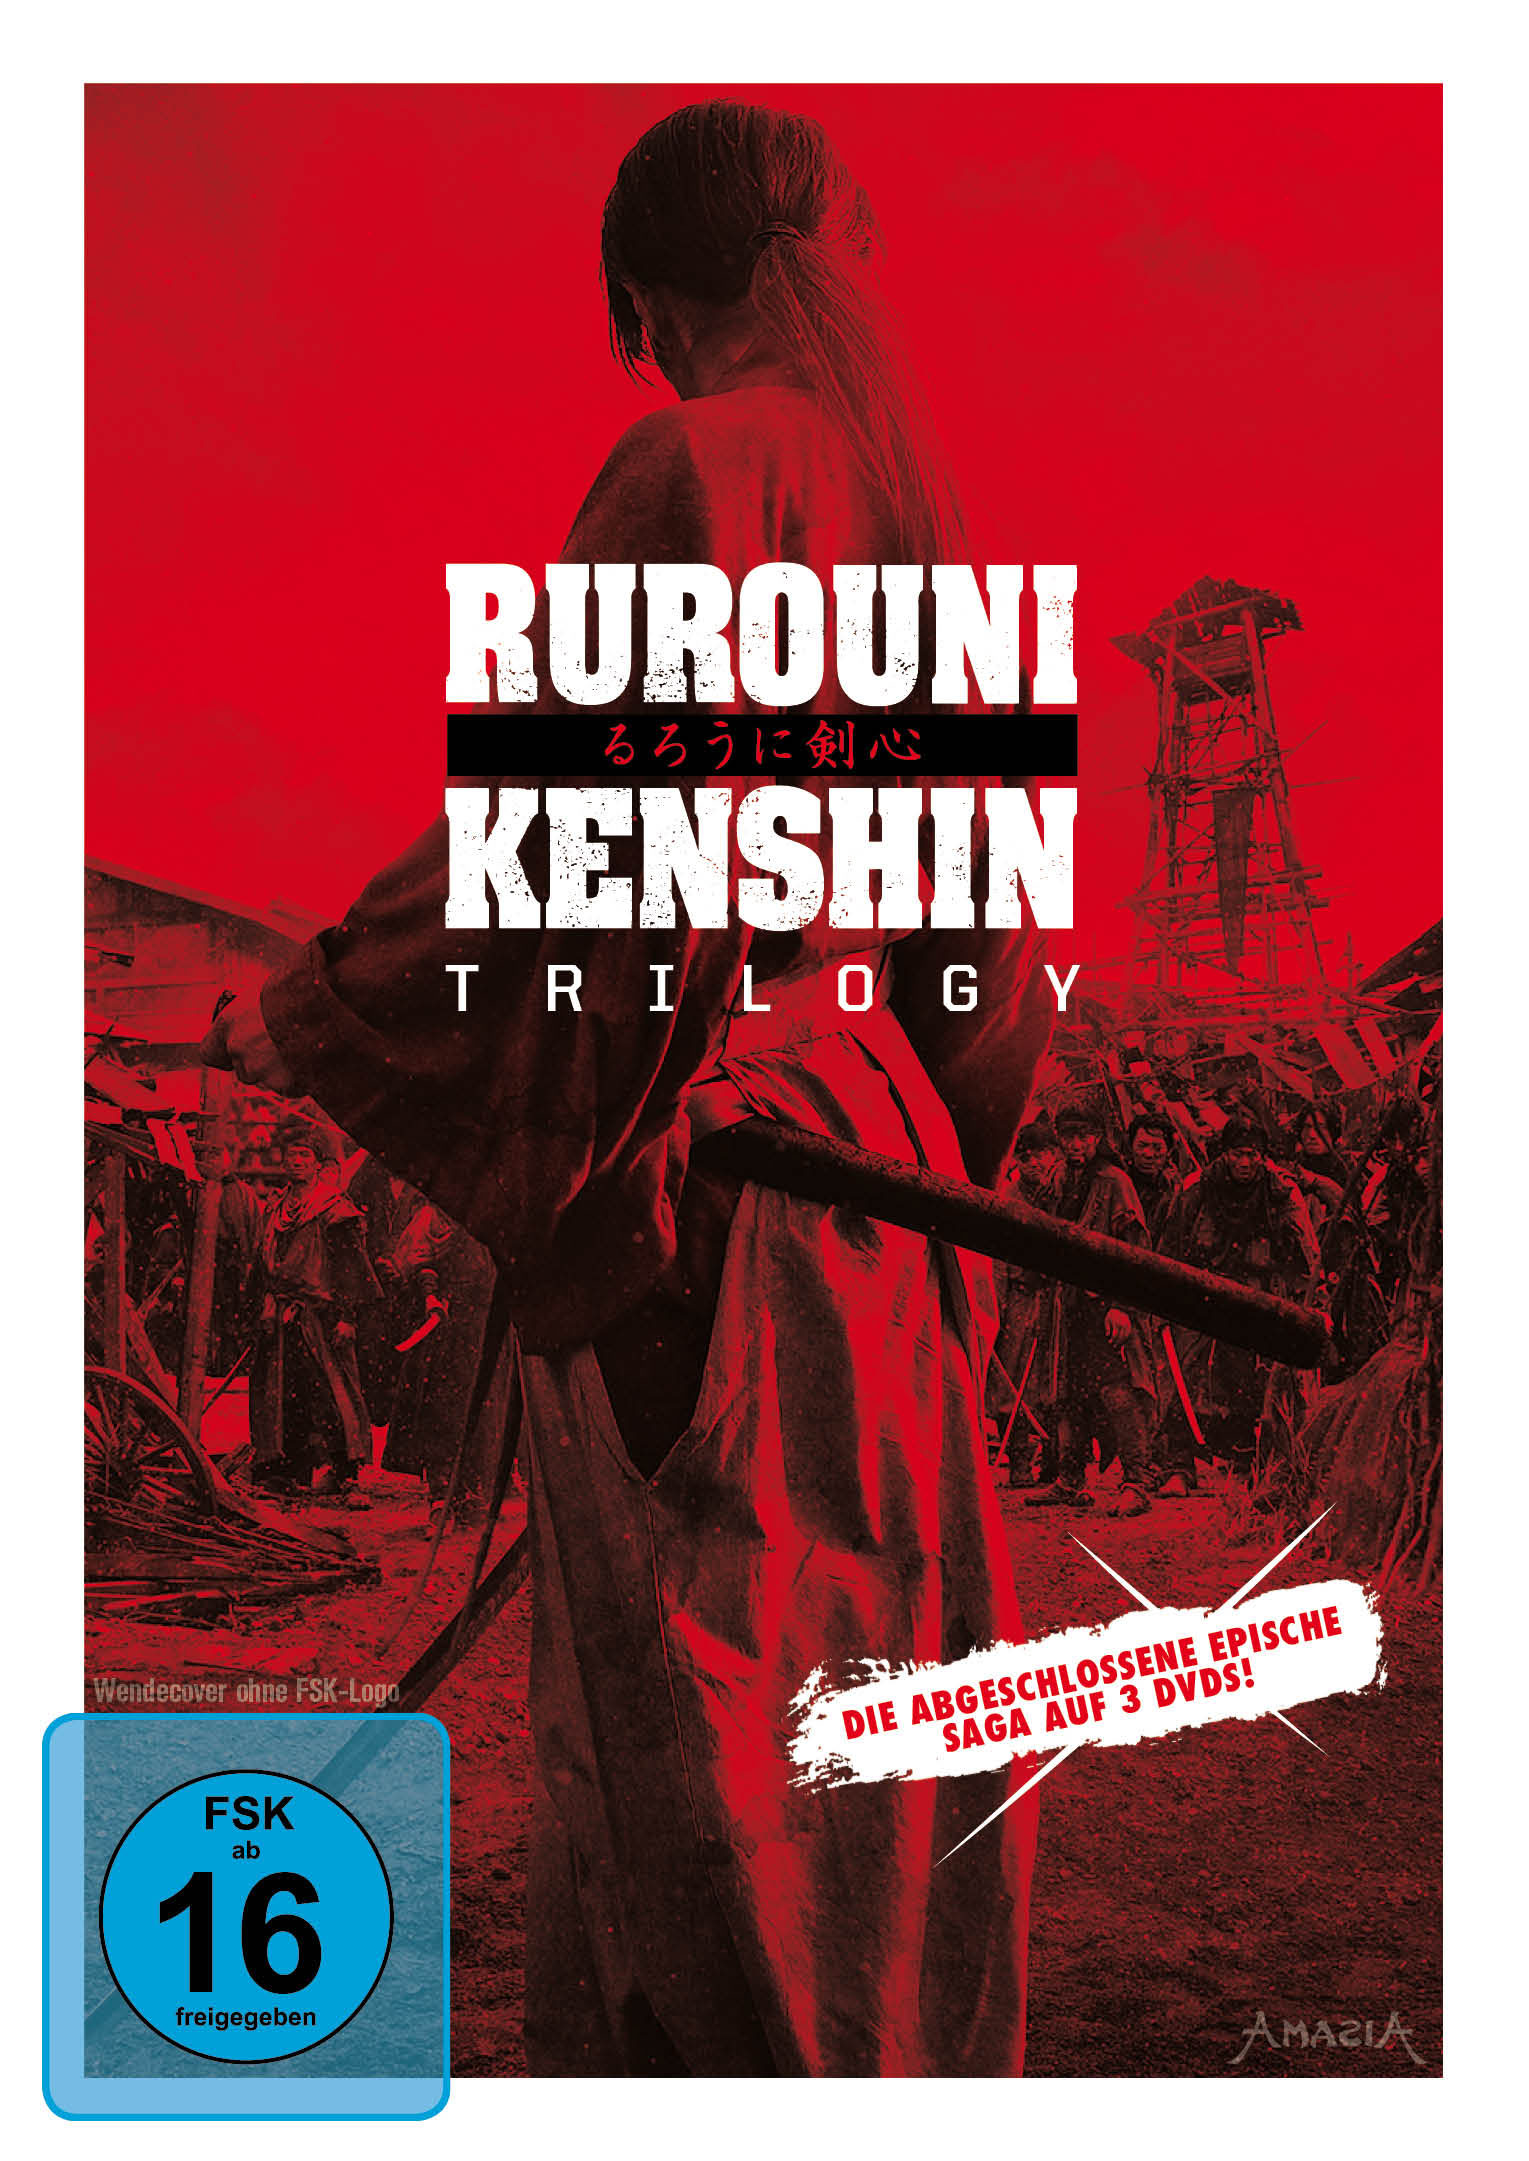 „Rurouni Kenshin“ Trilogy erscheint auf DVD und nochmals auf Bluray